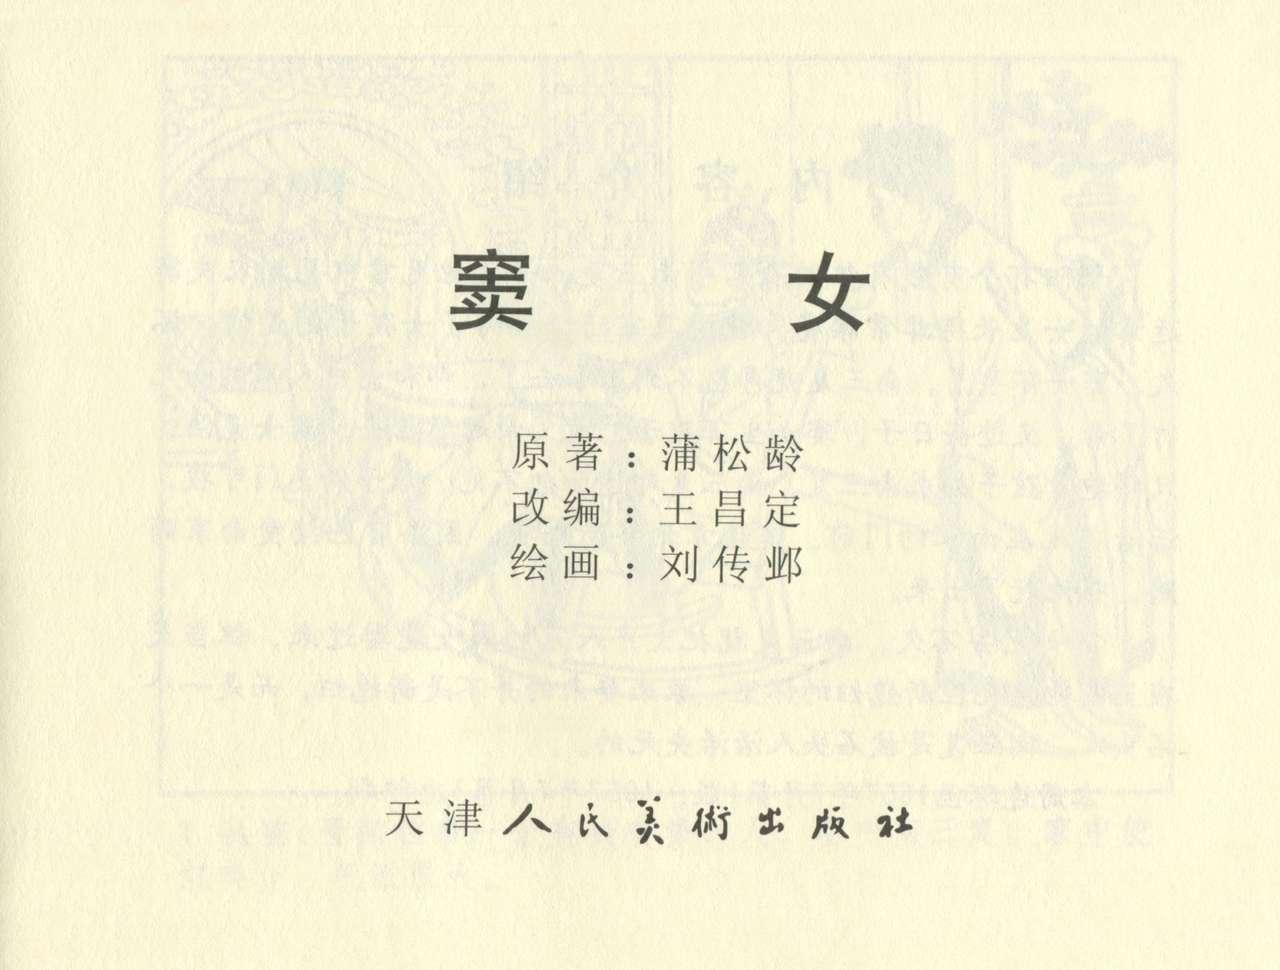 聊斋志异 张玮等绘 天津人民美术出版社 卷二十一 ~ 三十 208